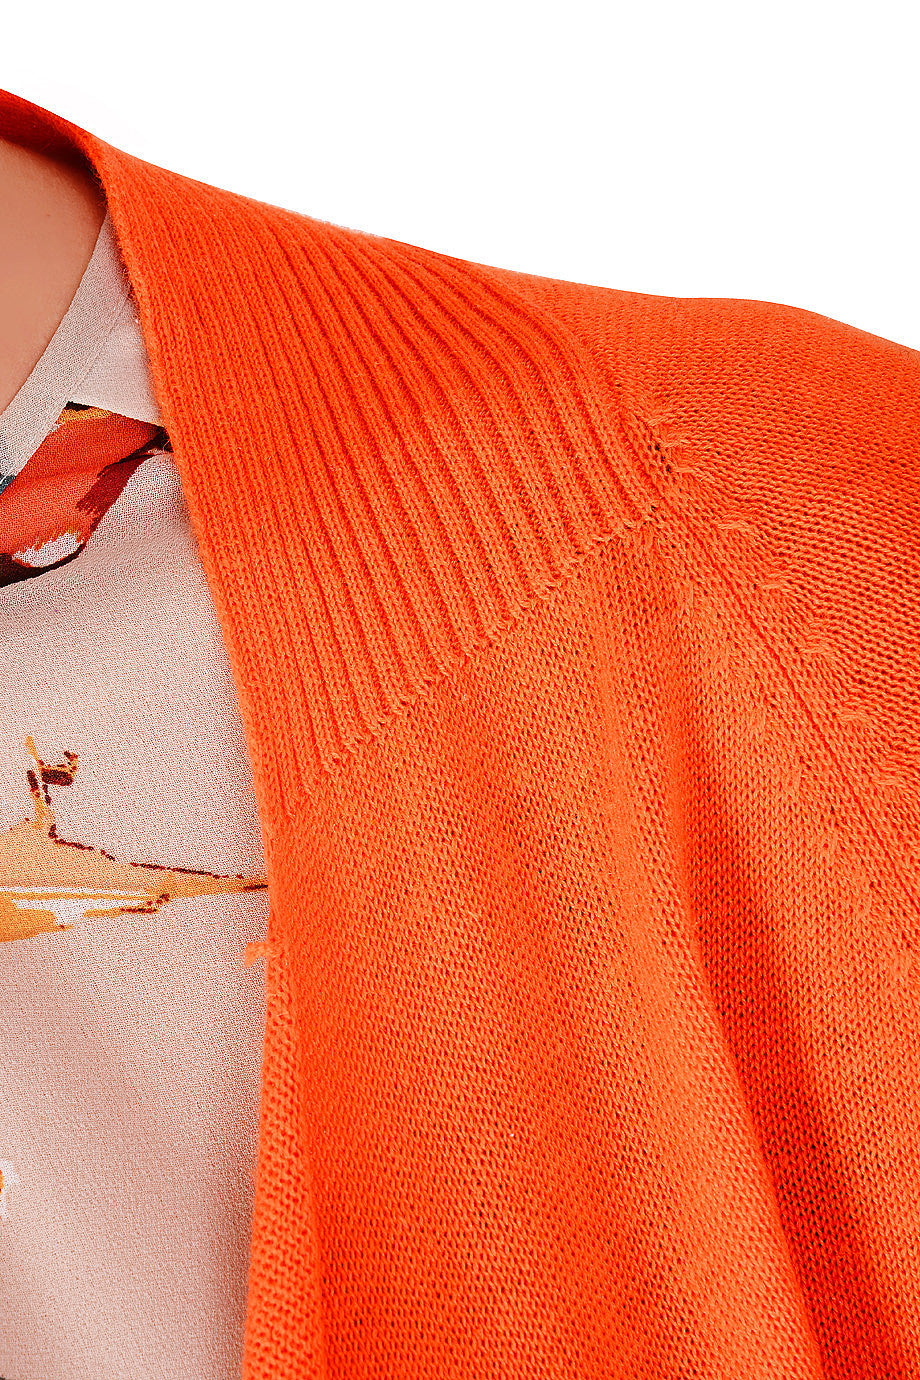 Πορτοκαλί Μακριά Ζακέτα | Γυναικεία Ρούχα